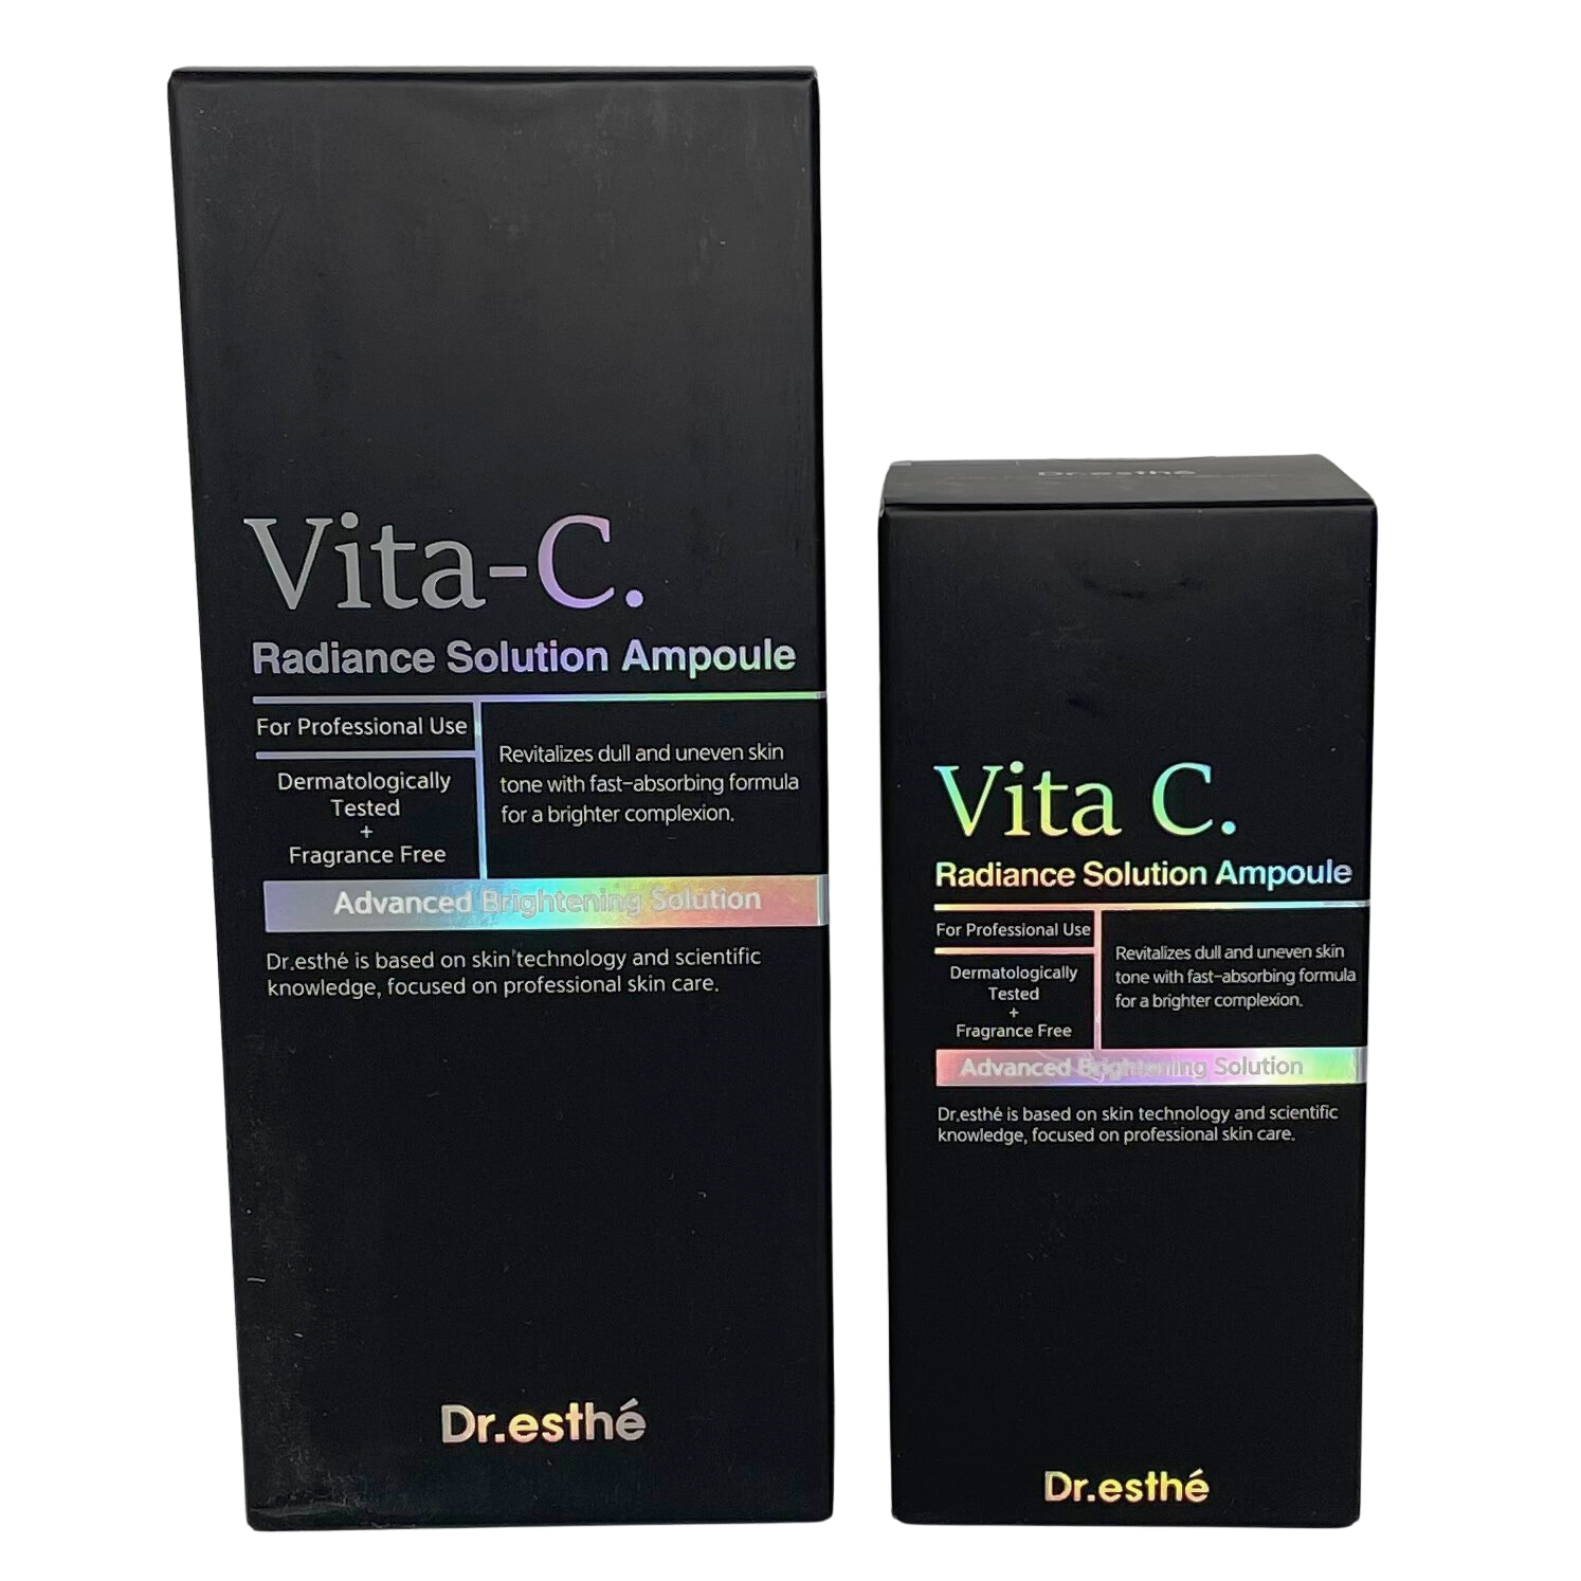 Dr Esthé Vita-C Radiance Solution Ampoule boxes